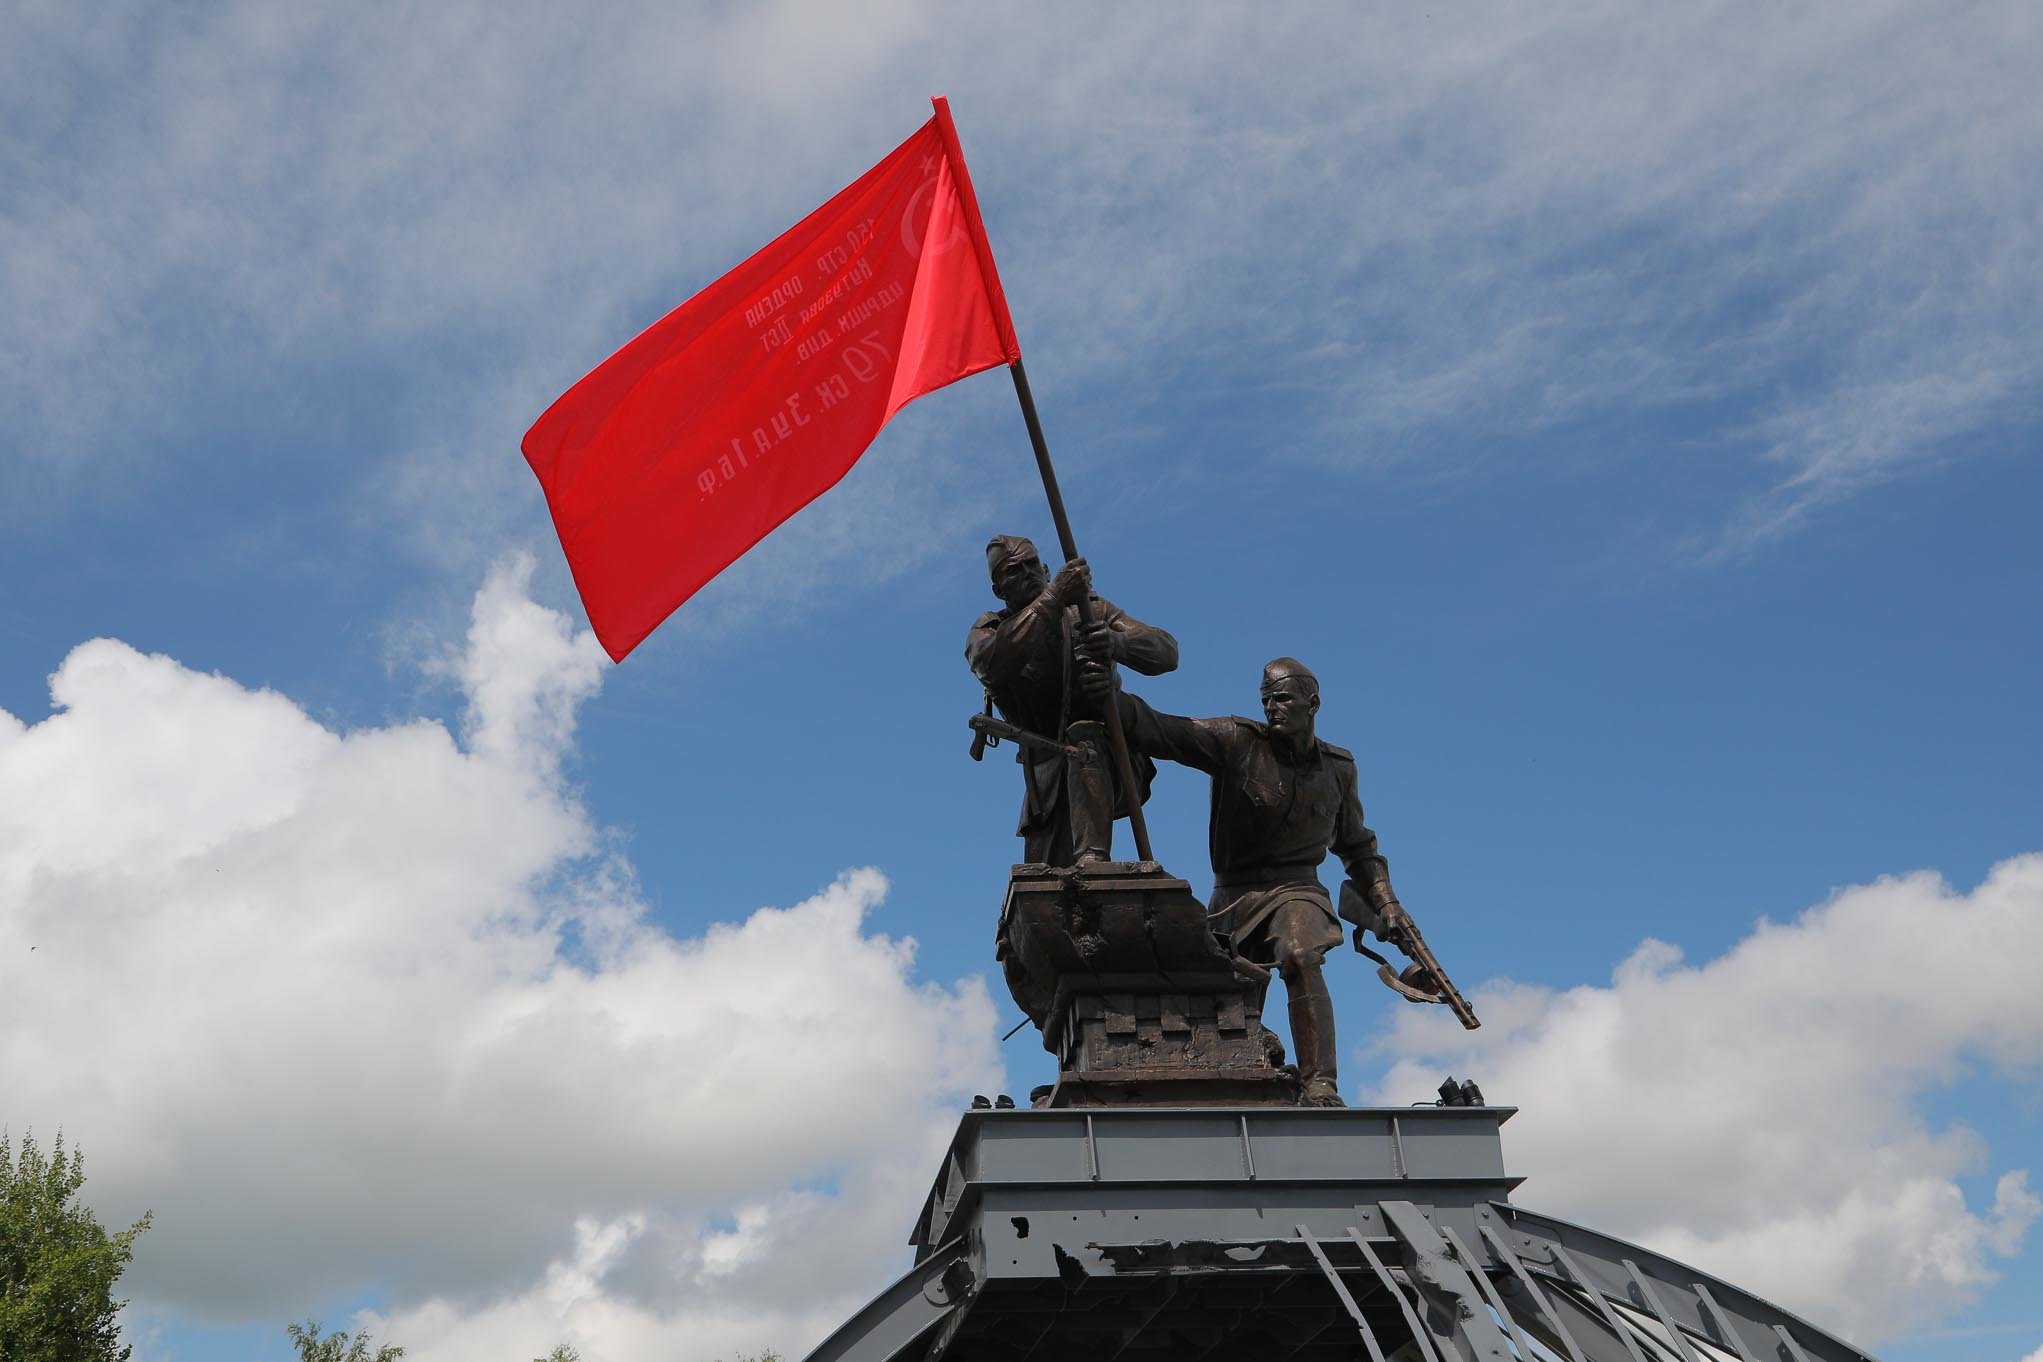 Водружение Знамени Победы над Рейхстагом